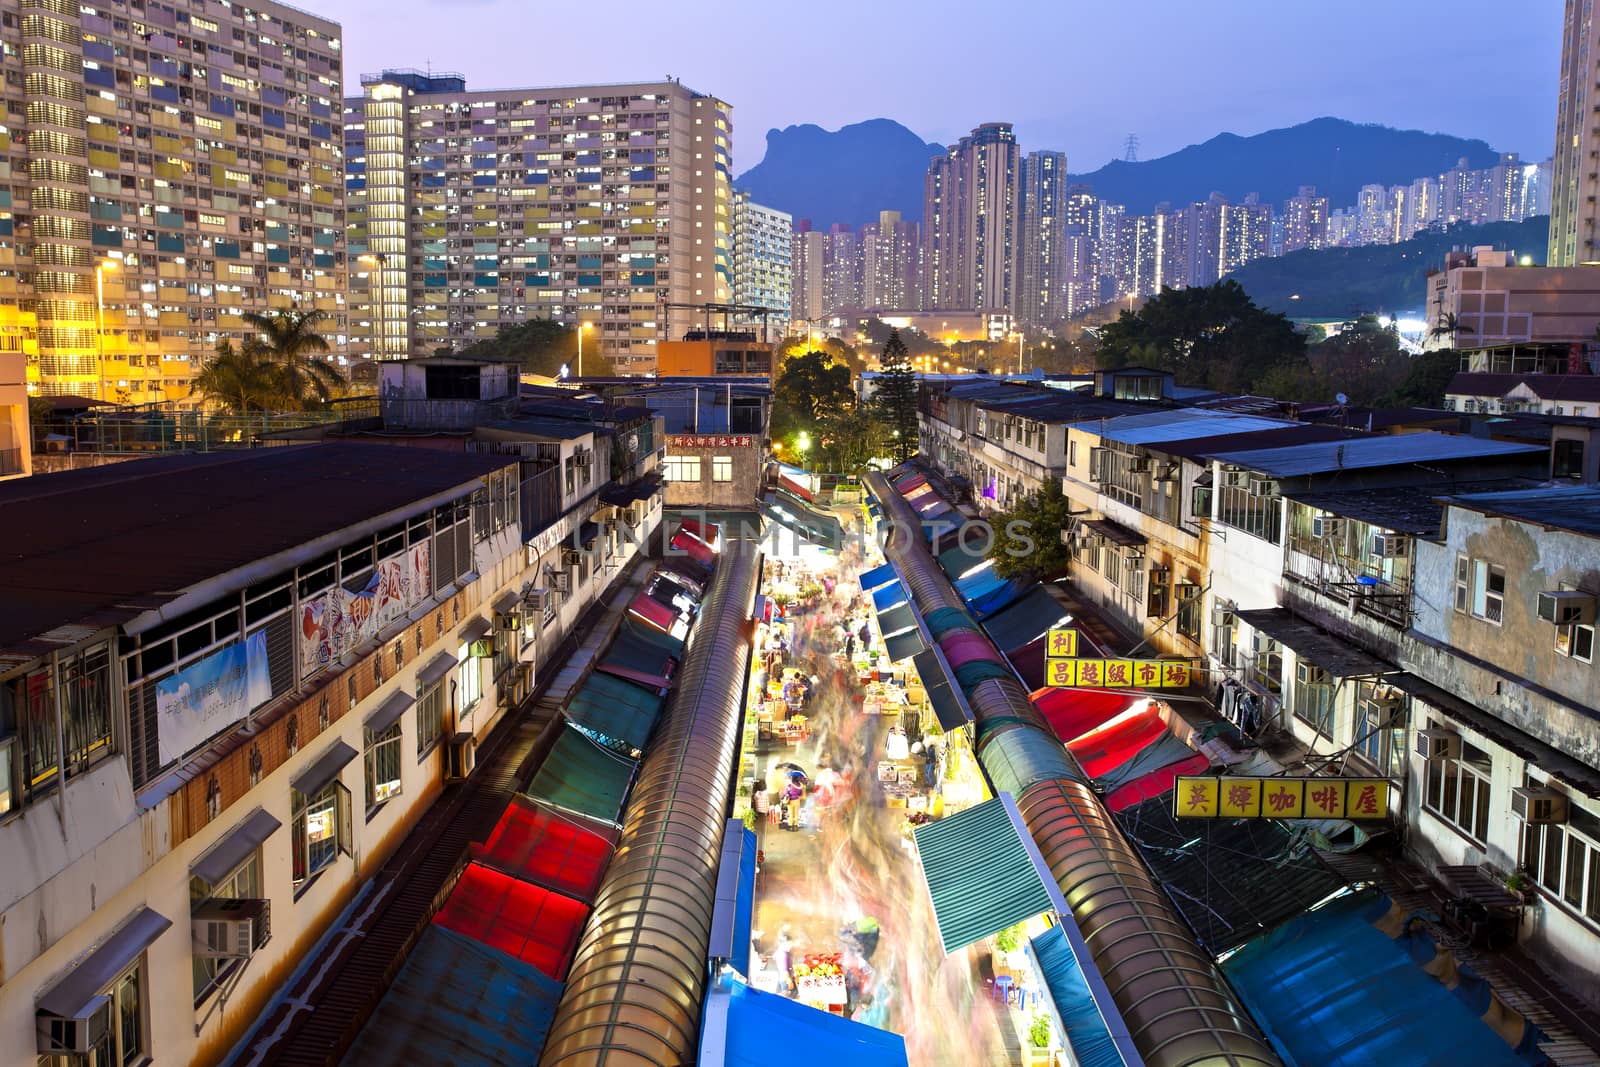 Local market in Hong Kong at night by kawing921